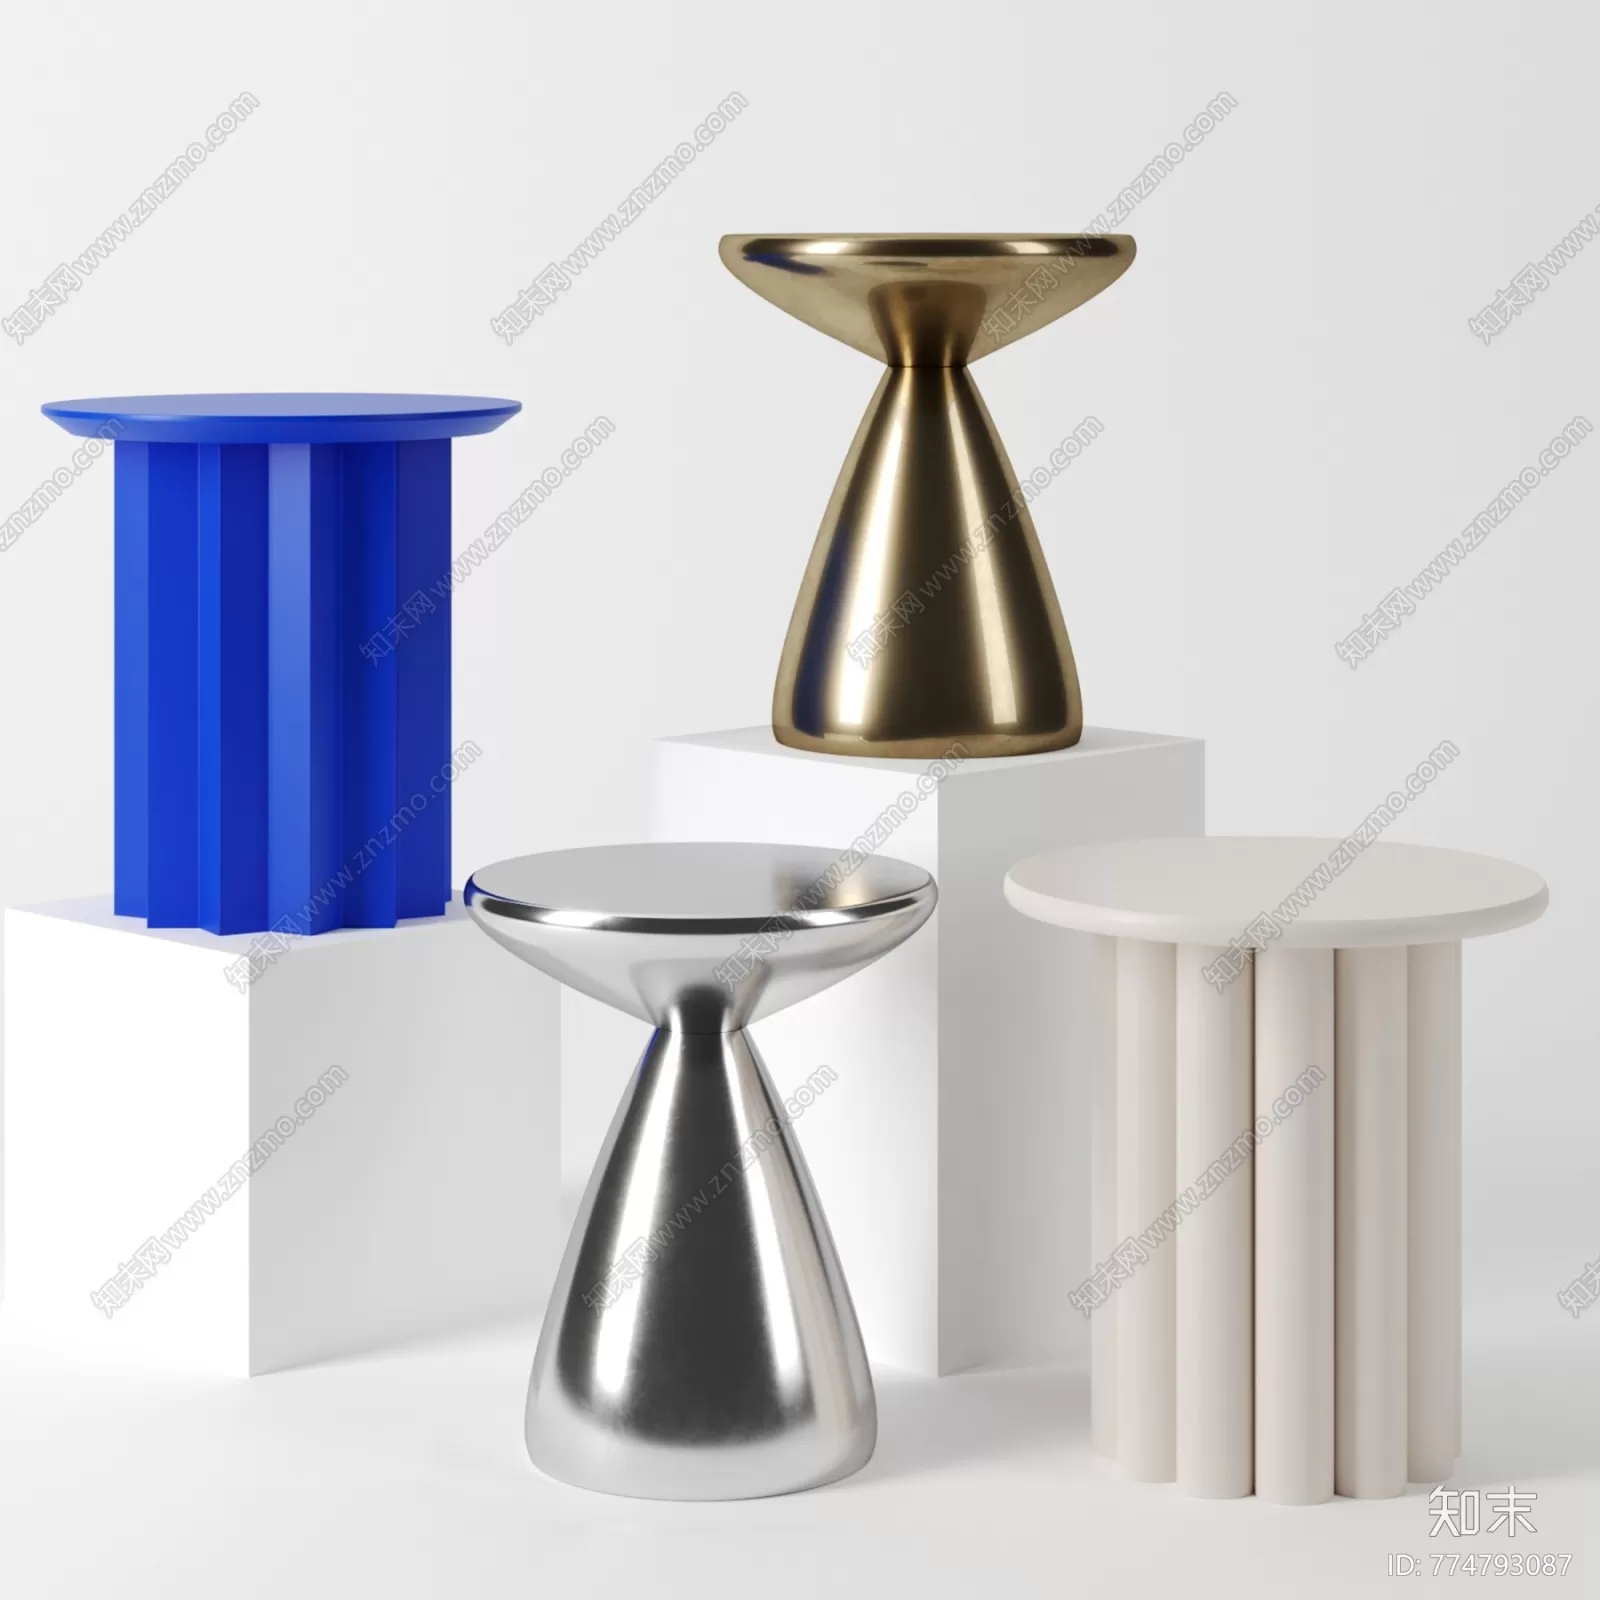 TEA TABLES 3D MODELS – 209 – PRO